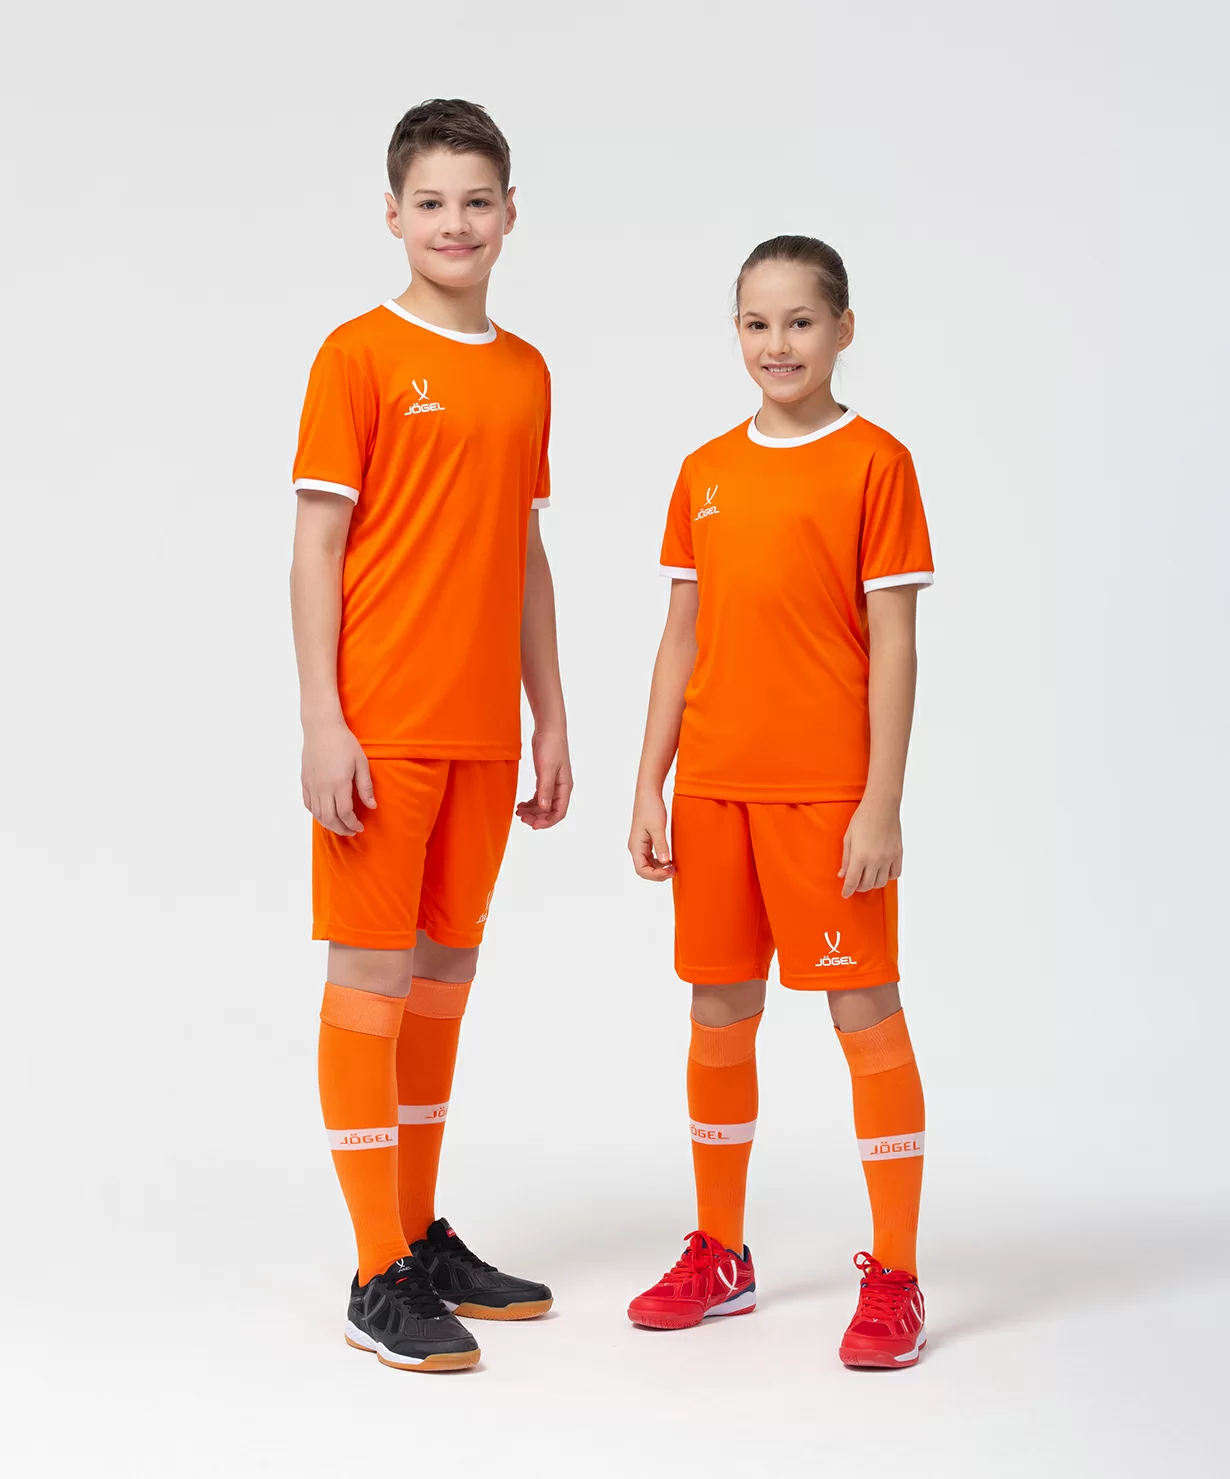 Реальное фото Шорты игровые CAMP Classic Shorts, оранжевый/белый, детский Jögel от магазина Спортев